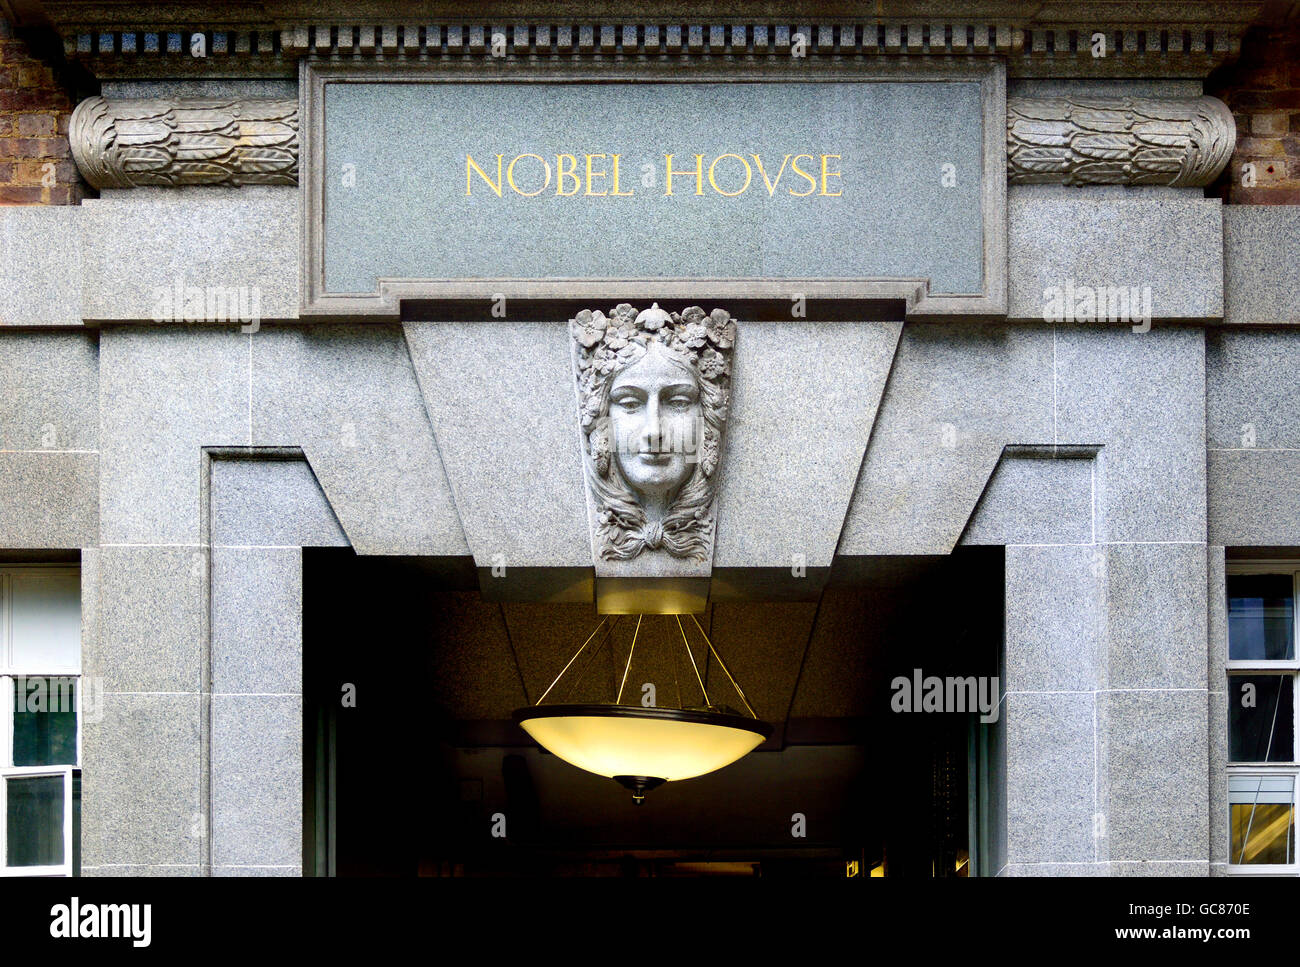 Londres, Angleterre, Royaume-Uni. Prix Nobel House, 17 Smith Square - 1928 construit pour Imperial Chemical Industries (ICI). Maintenant à la maison de DEFRA Banque D'Images